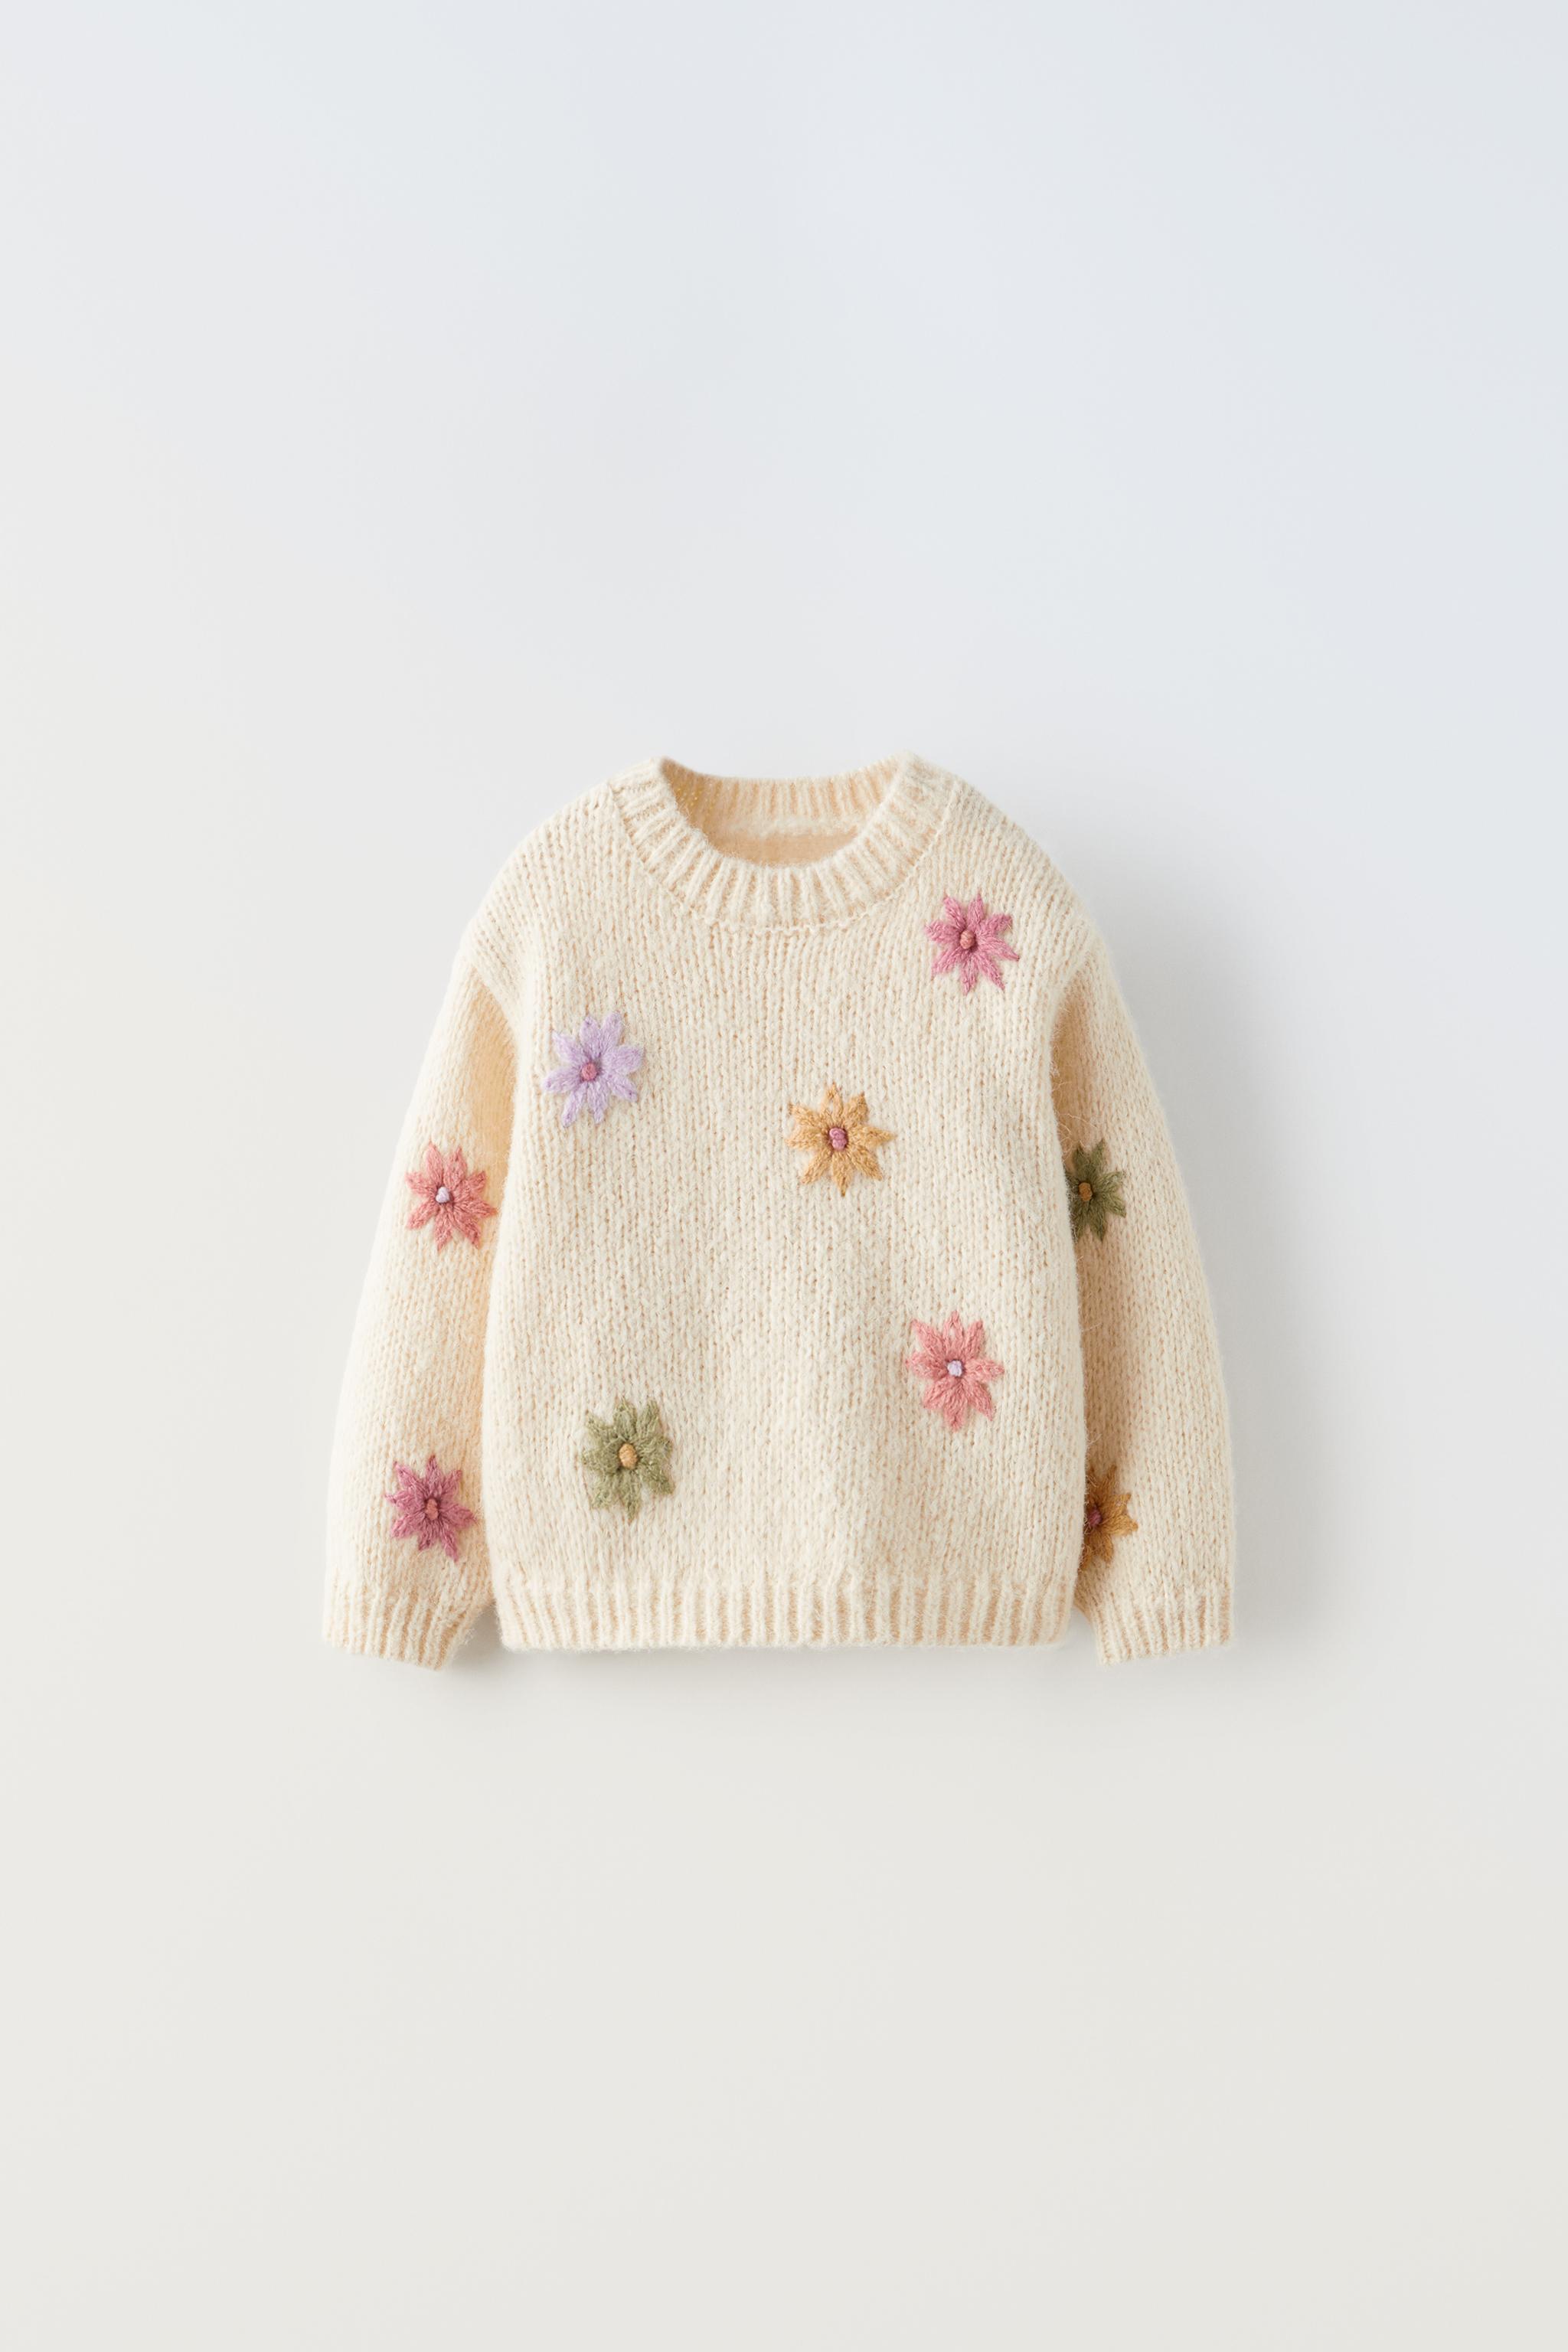 7,723円完売 半額以下 ザラ ZARA LIMITED EDITION 刺繍入りセーター